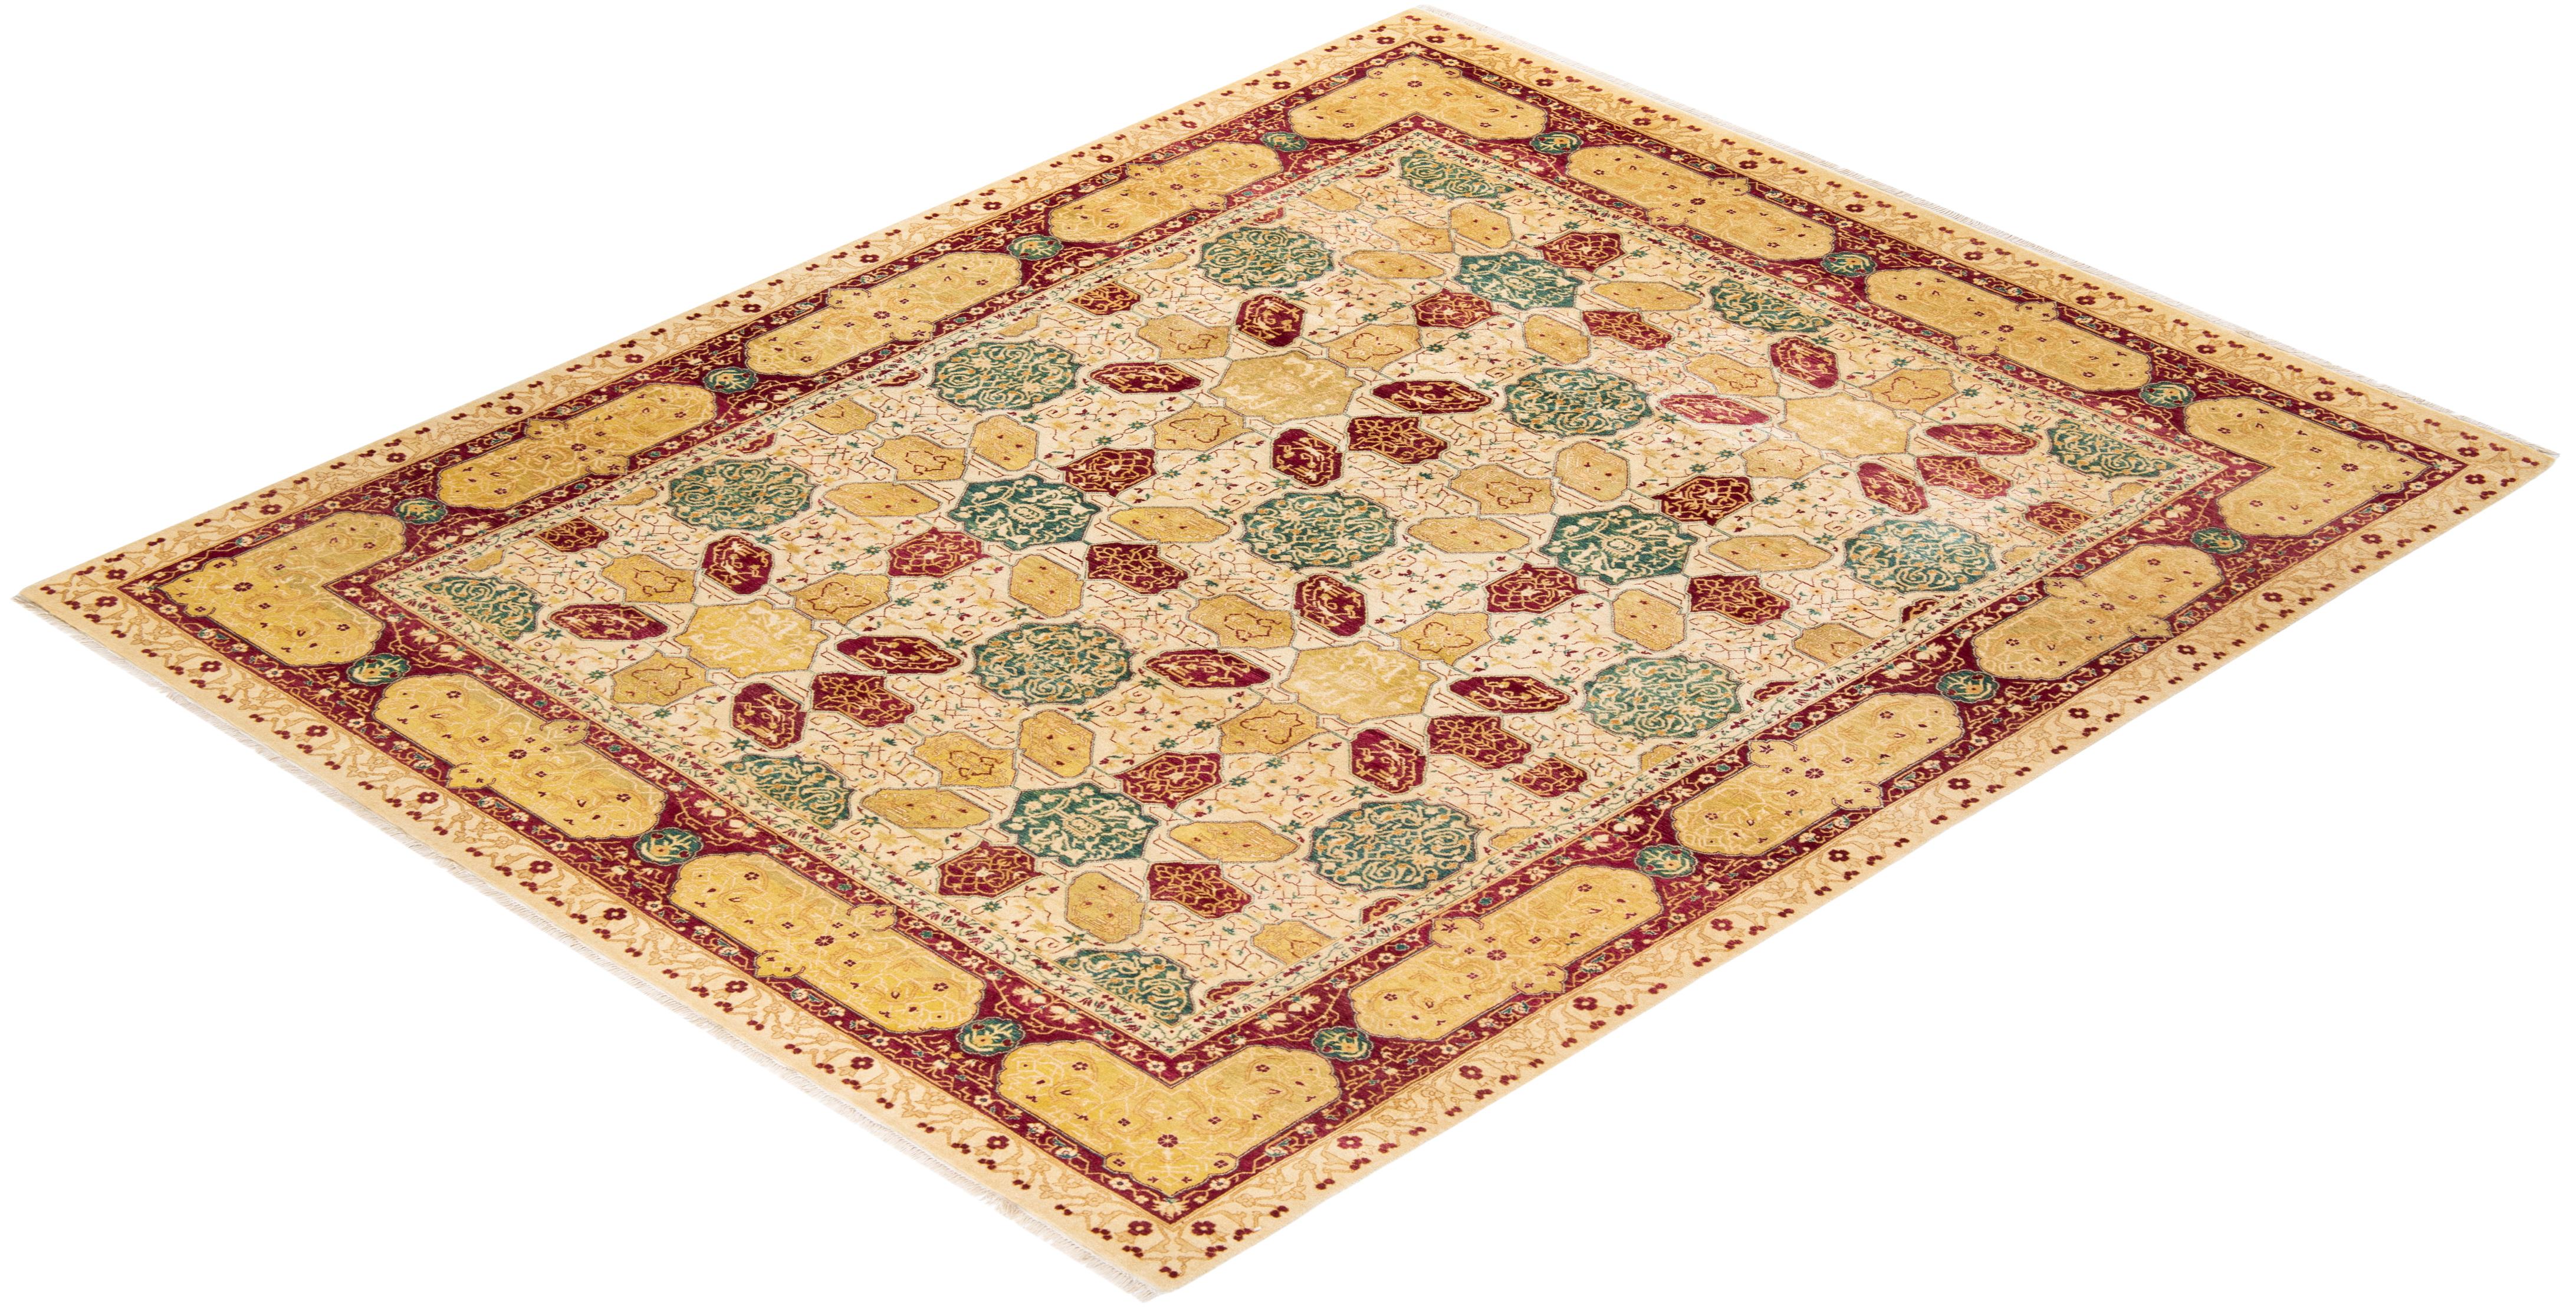 Die Teppiche der Mogul-Kollektion bringen mit ihren zurückhaltenden Farben und Allover-Mustern zeitlose Eleganz in jeden Raum. Beeinflusst von einem Spektrum türkischer, indischer und persischer Designs, lassen die Kunsthandwerker, die diese